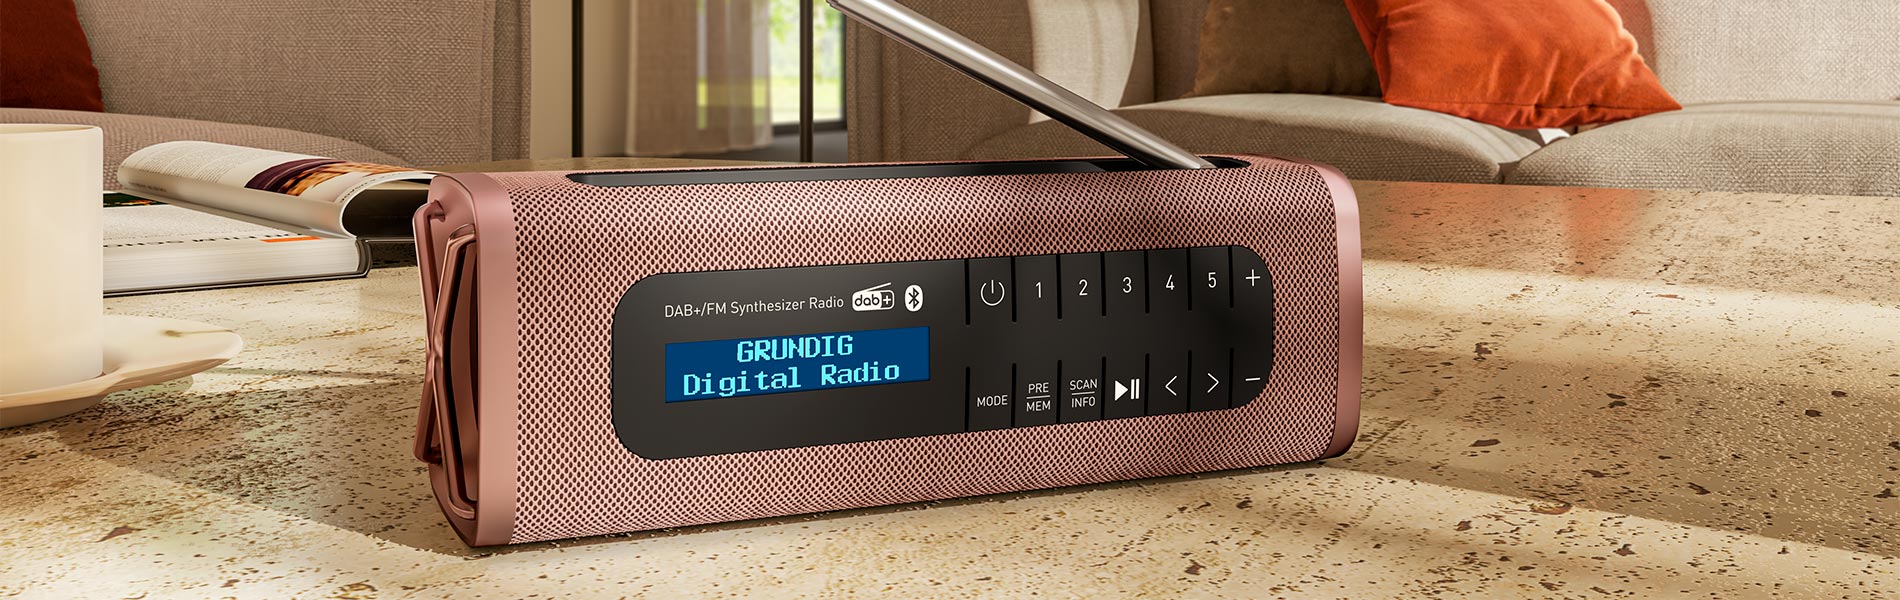 Digital FM – Solo lo mejor